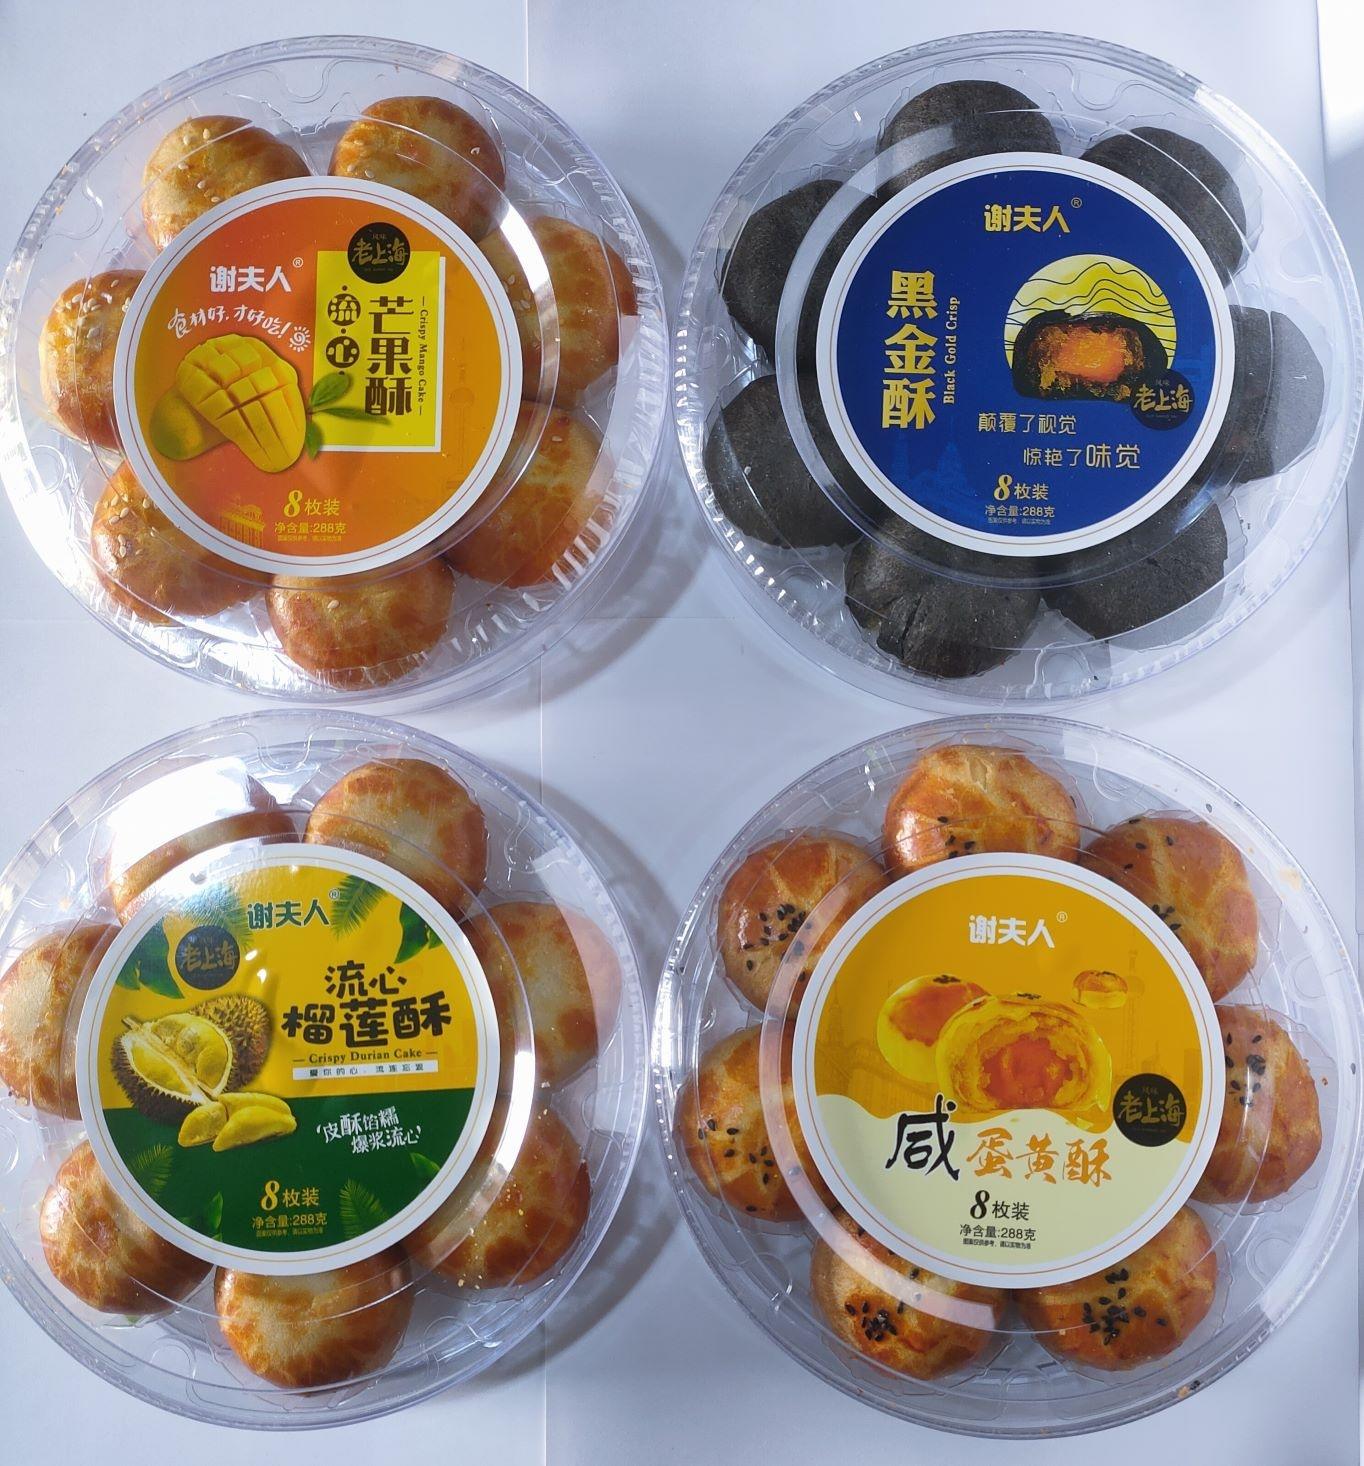 上海特产 谢夫人老上海风味 咸蛋黄酥 黑金酥 芒果酥 榴莲酥 礼盒